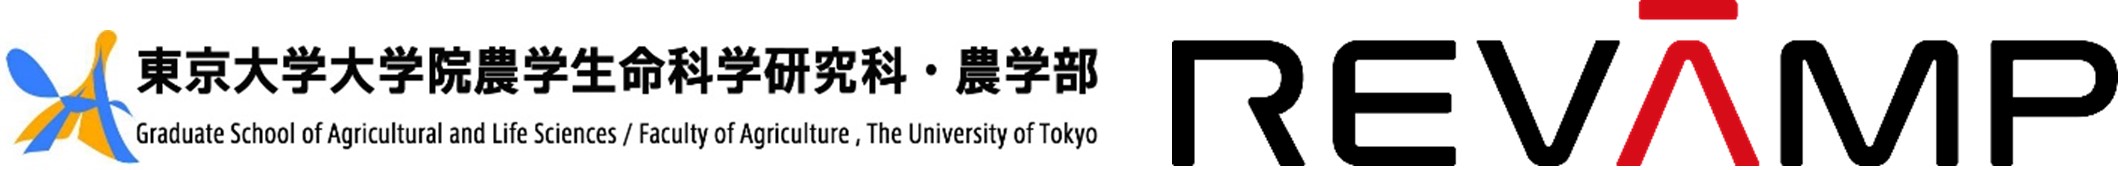 東京大学大学院農学生命科学研究科で寄付講座「農学におけるイノベーションと社会実装」講義プログラムを開講します。